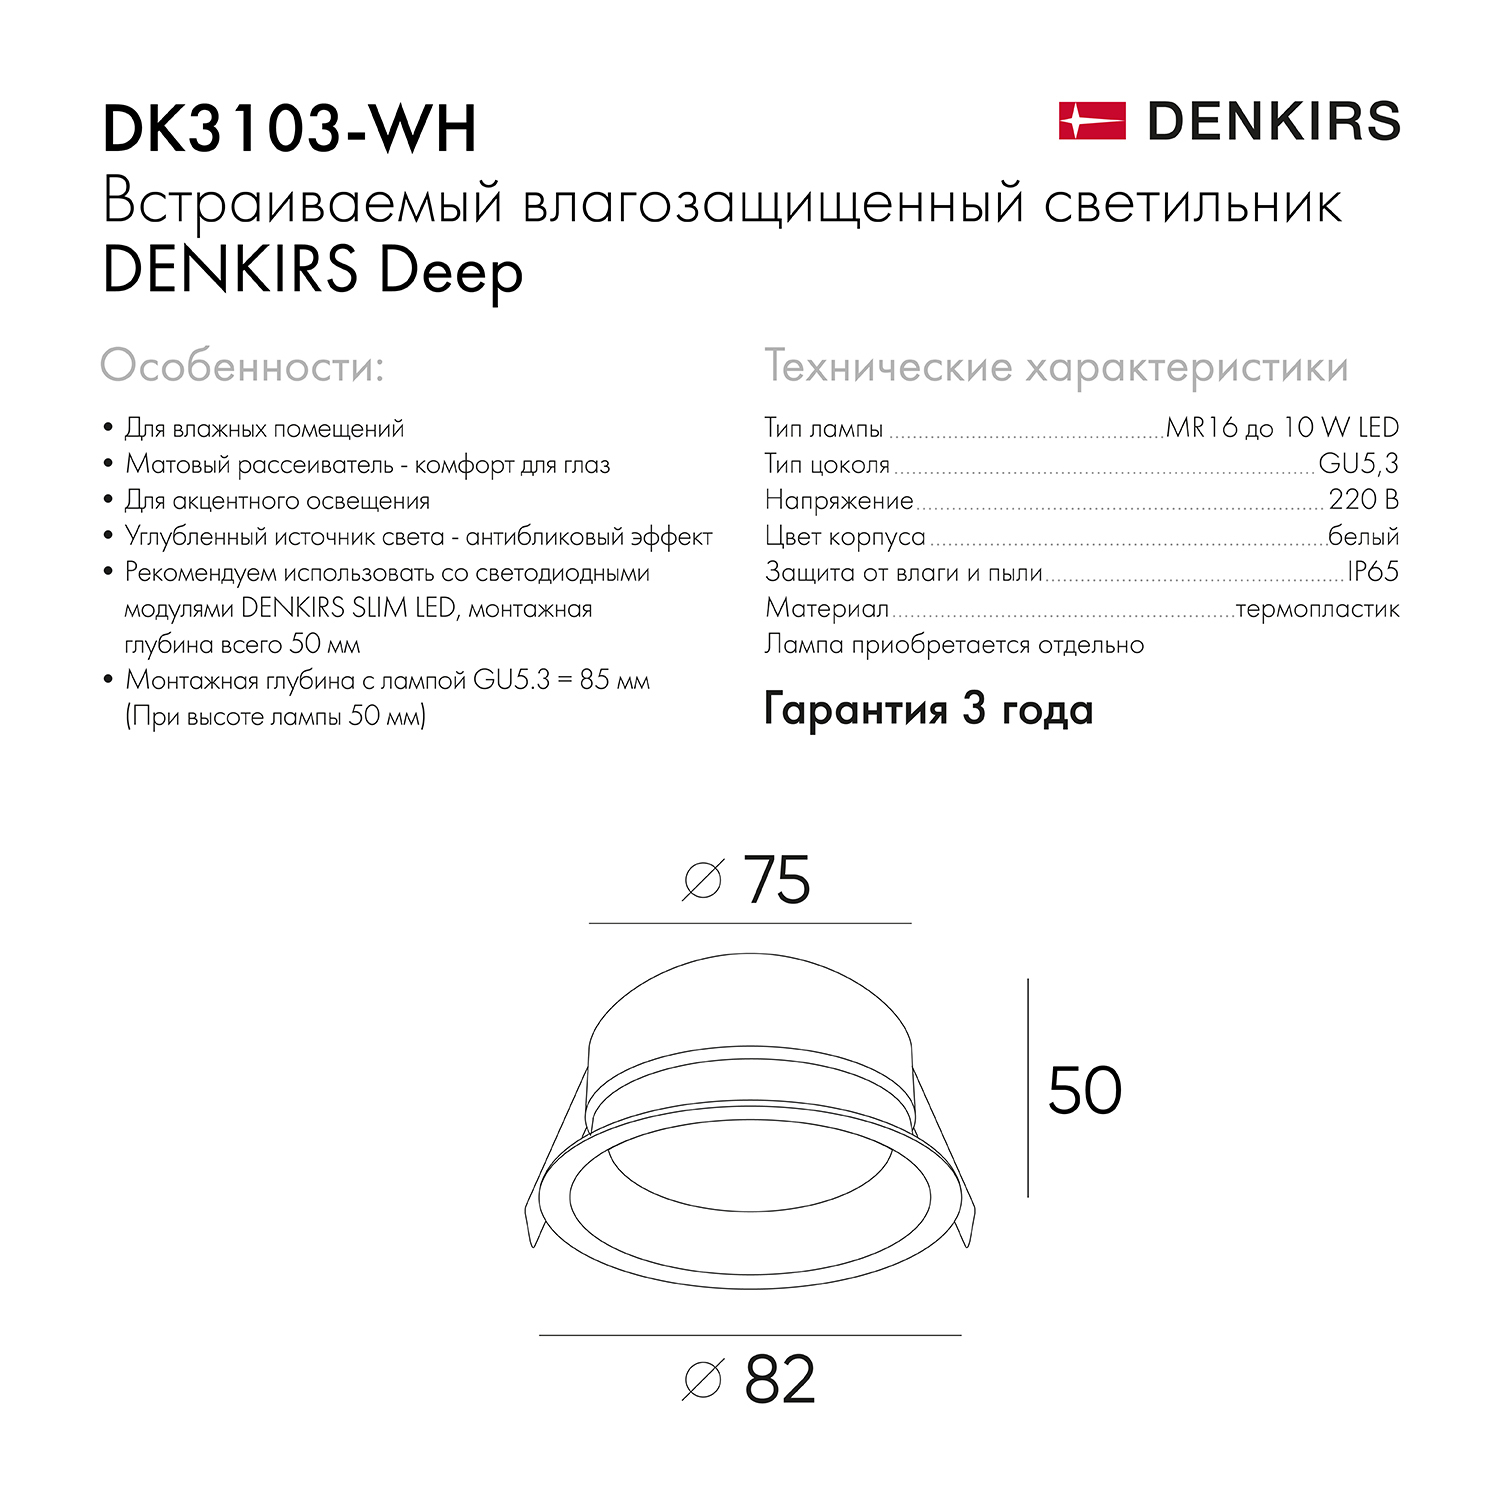 DK3103-WH